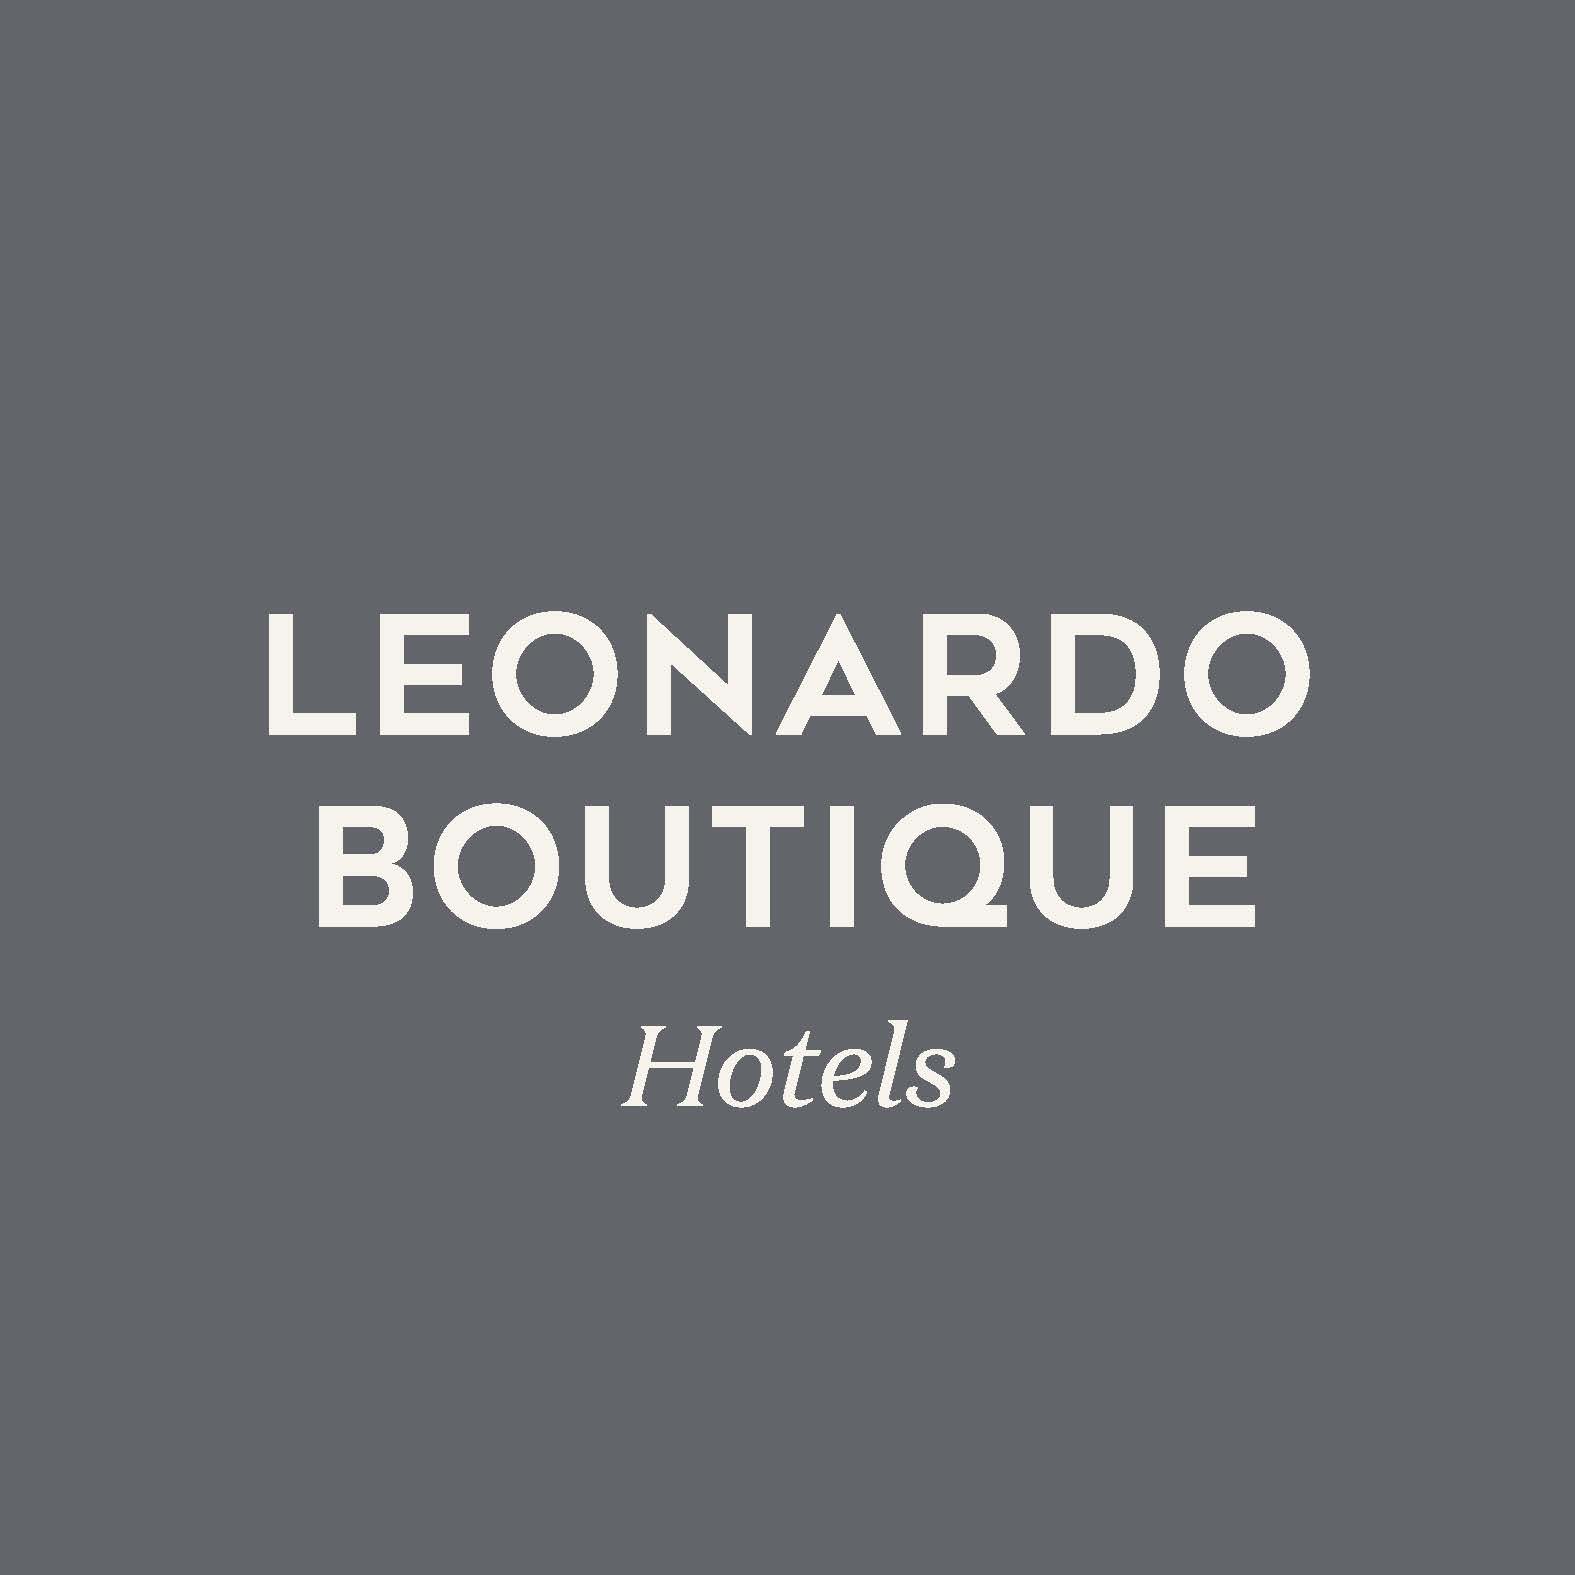 Leonardo Boutique